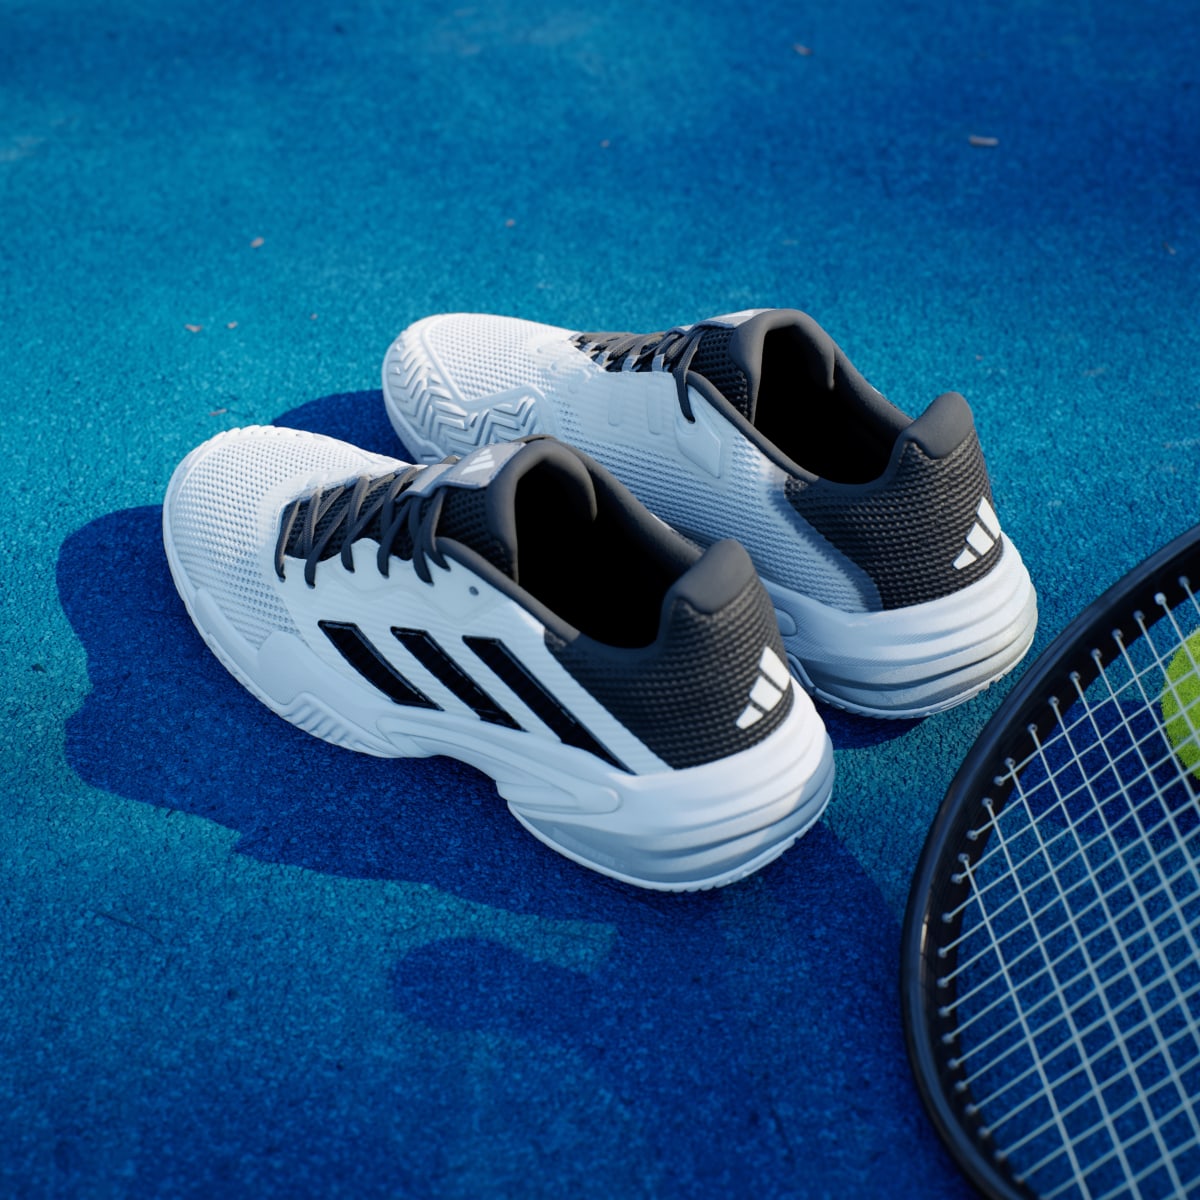 Adidas Barricade 13 Tenis Ayakkabısı. 6